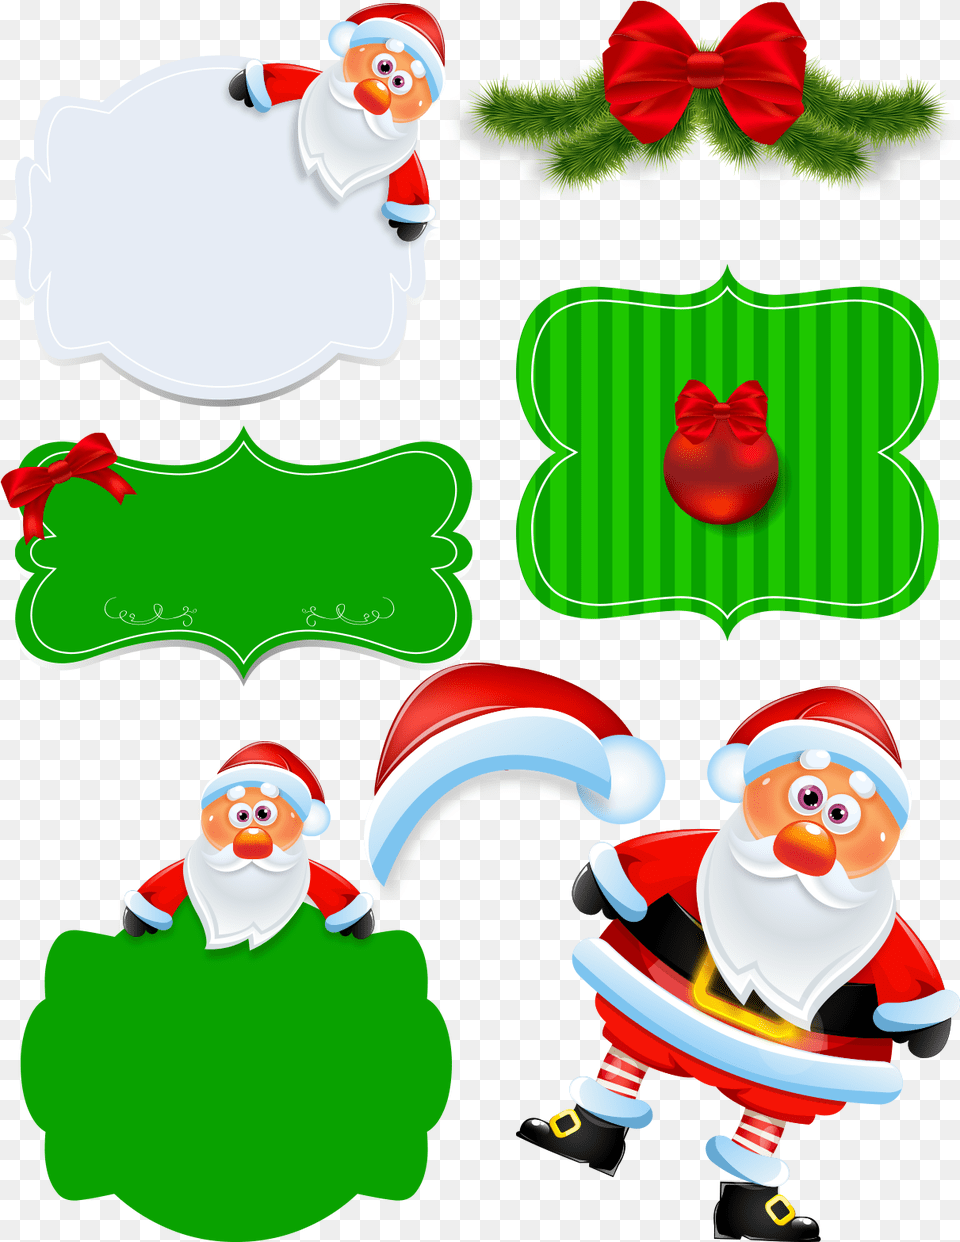 Enfeites Para O Natal Com Fundo Transparente Em Papai Noel Com Placa, Outdoors, Winter, Baby, Nature Free Transparent Png